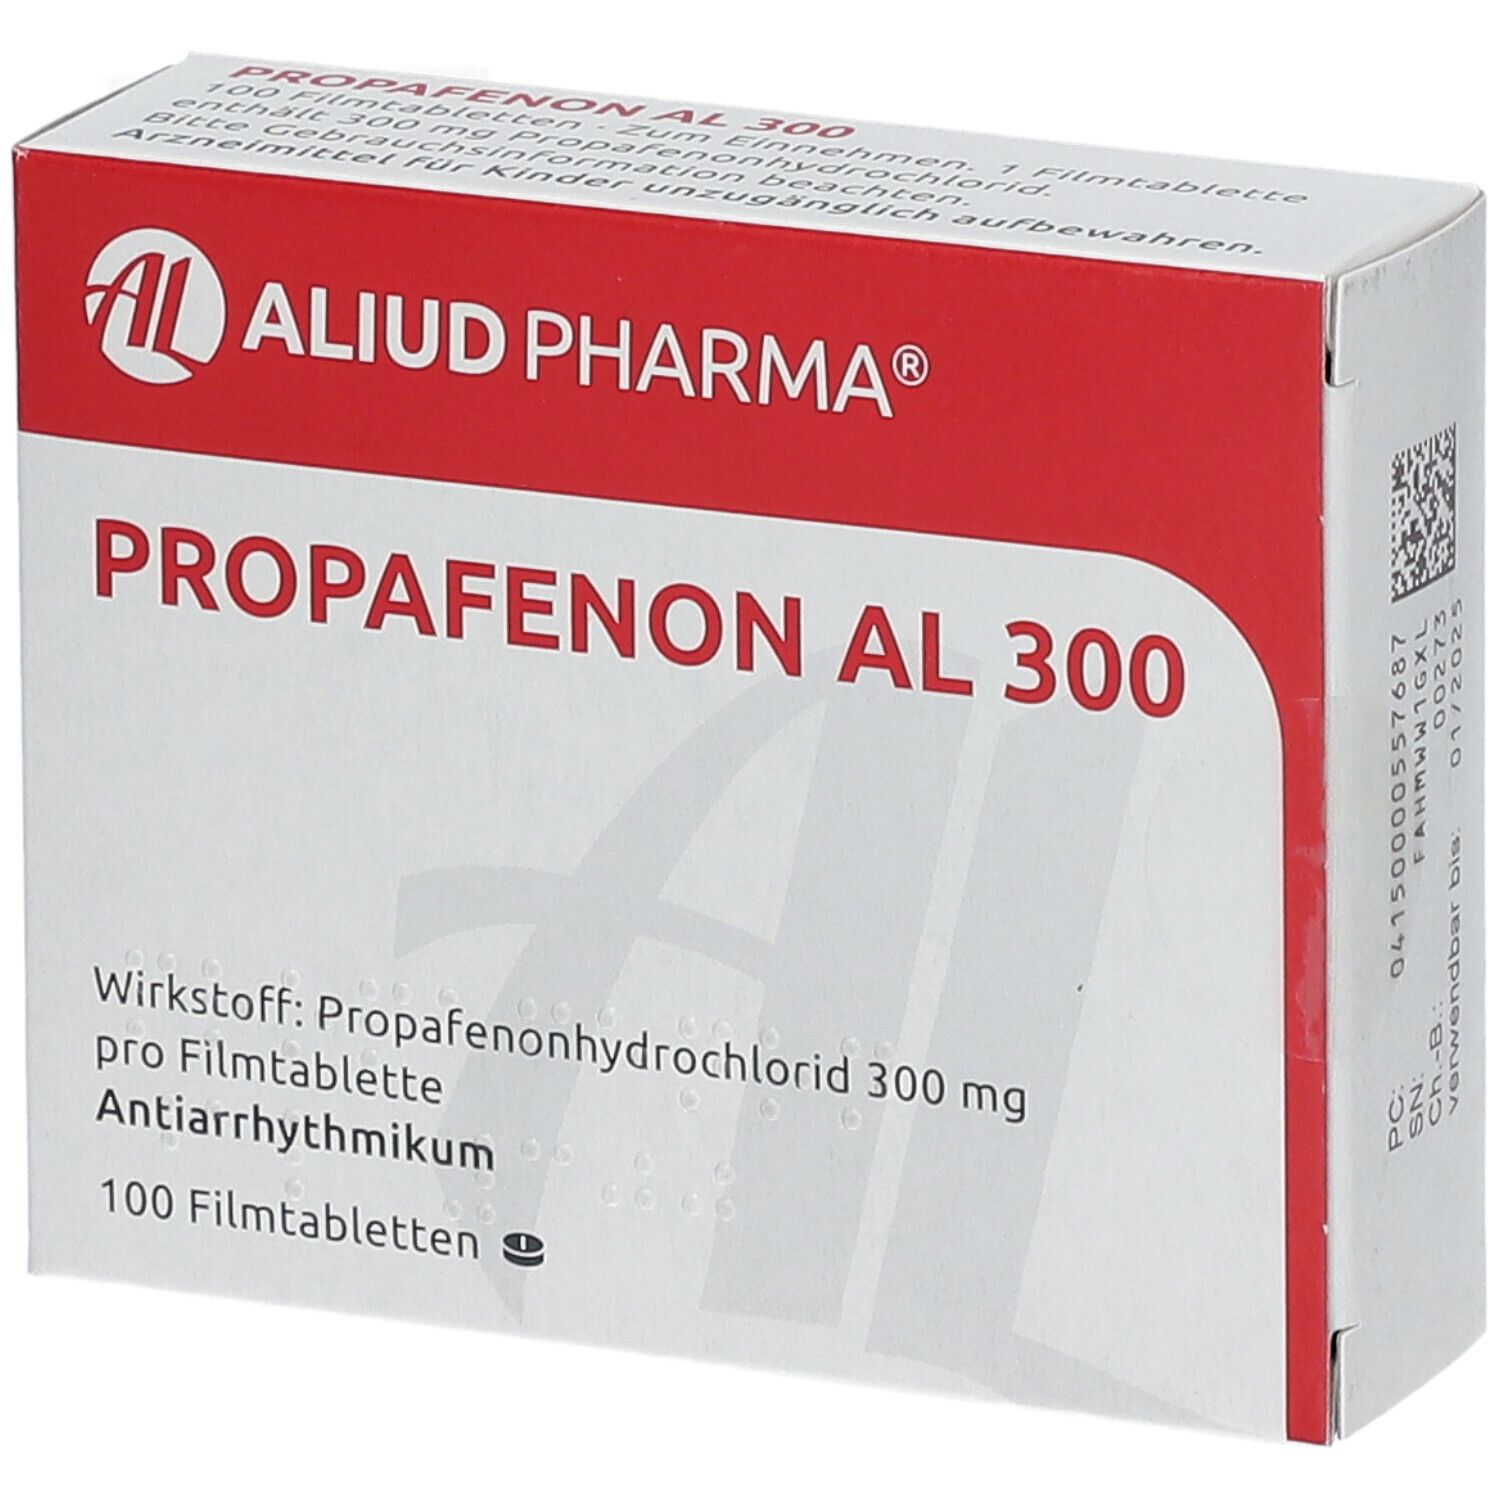 Propafenon AL 300